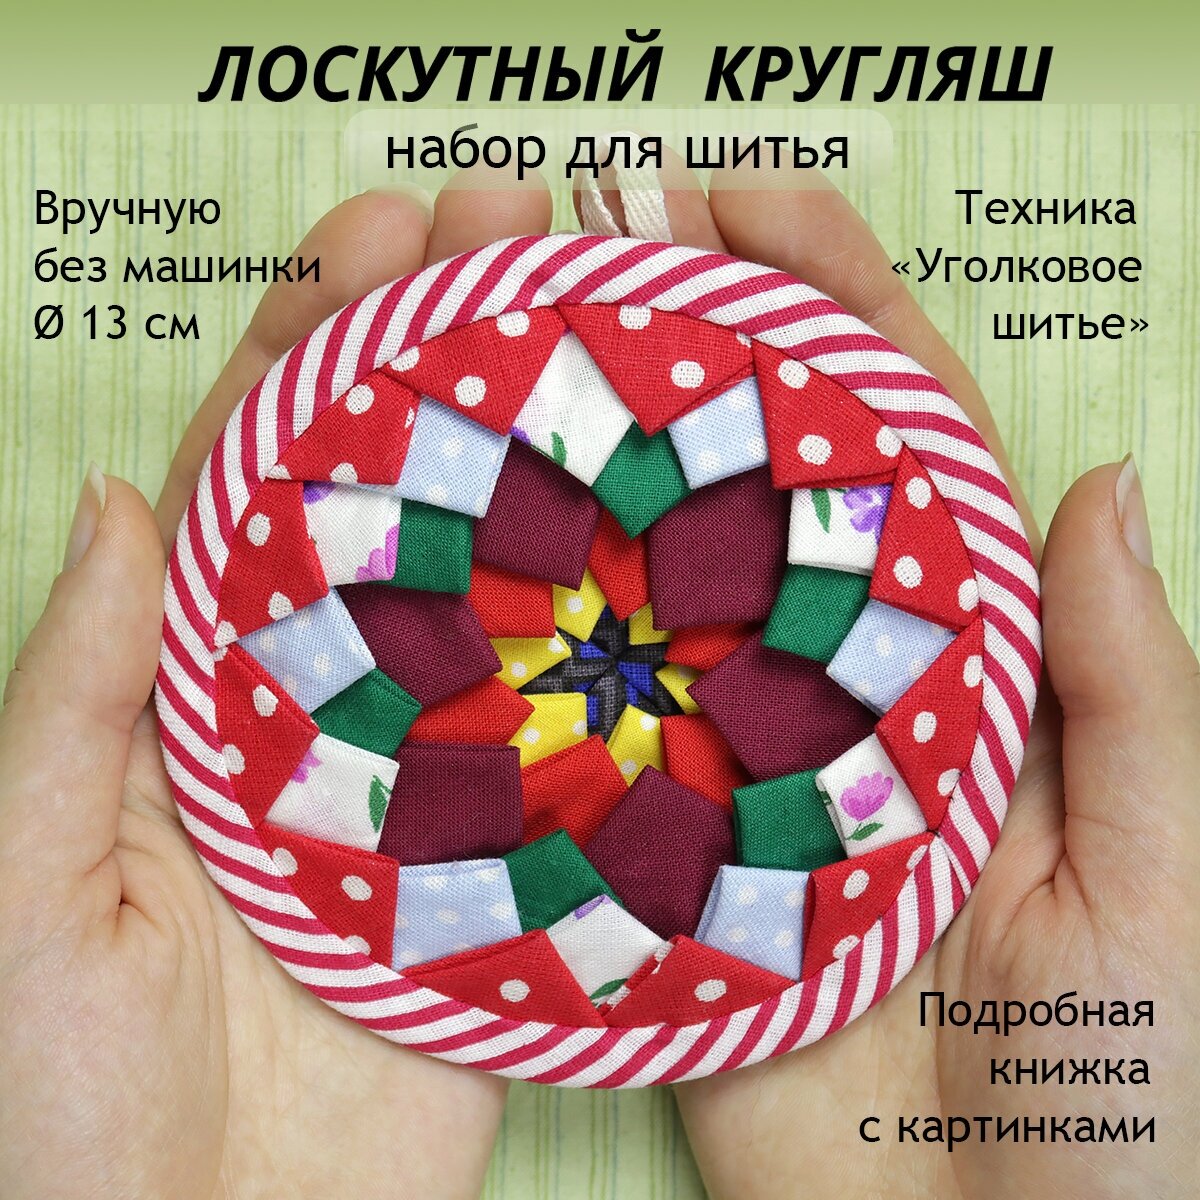 Лоскутная мозаика из ткани, набор для шитья коврика кругляша в технике "Уголковое шитье" вручную без швейной машины, подвеска мандала